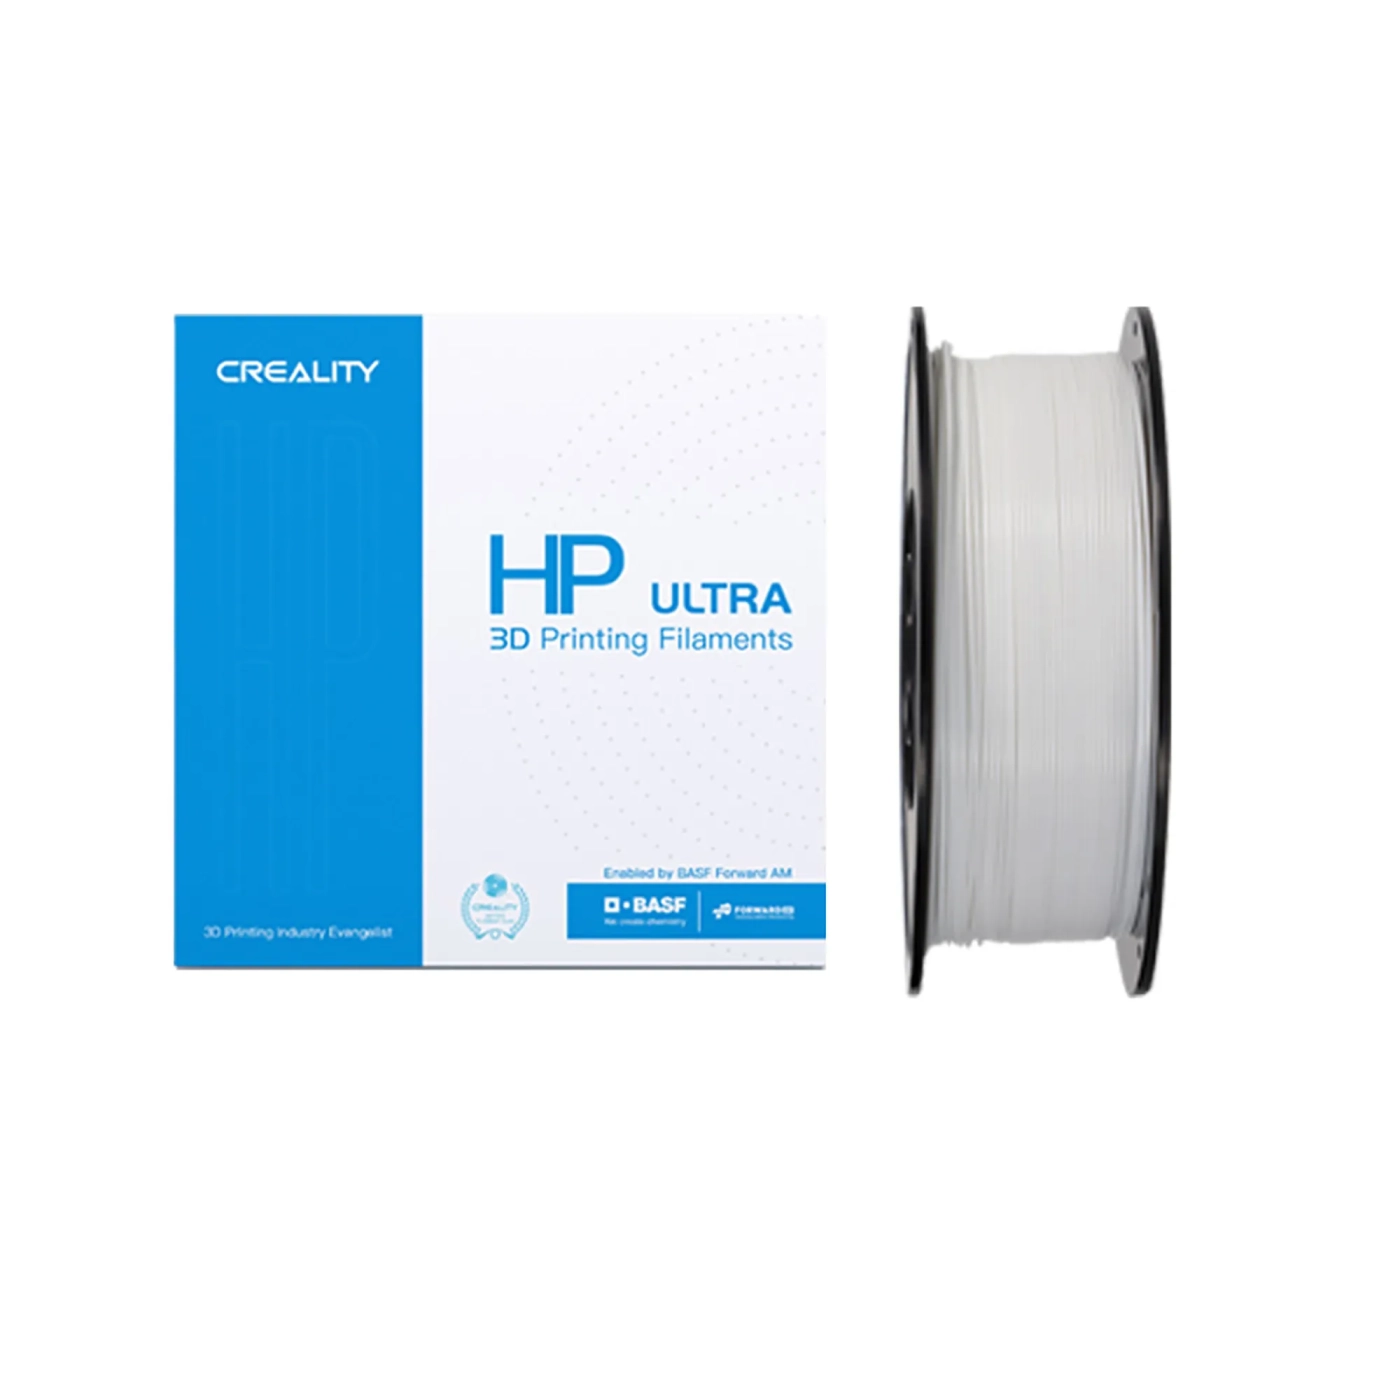 Купить HP ULTRA PLA Filament (пластик) для 3D принтера CREALITY 1кг, 1.75мм, белый - фото 1